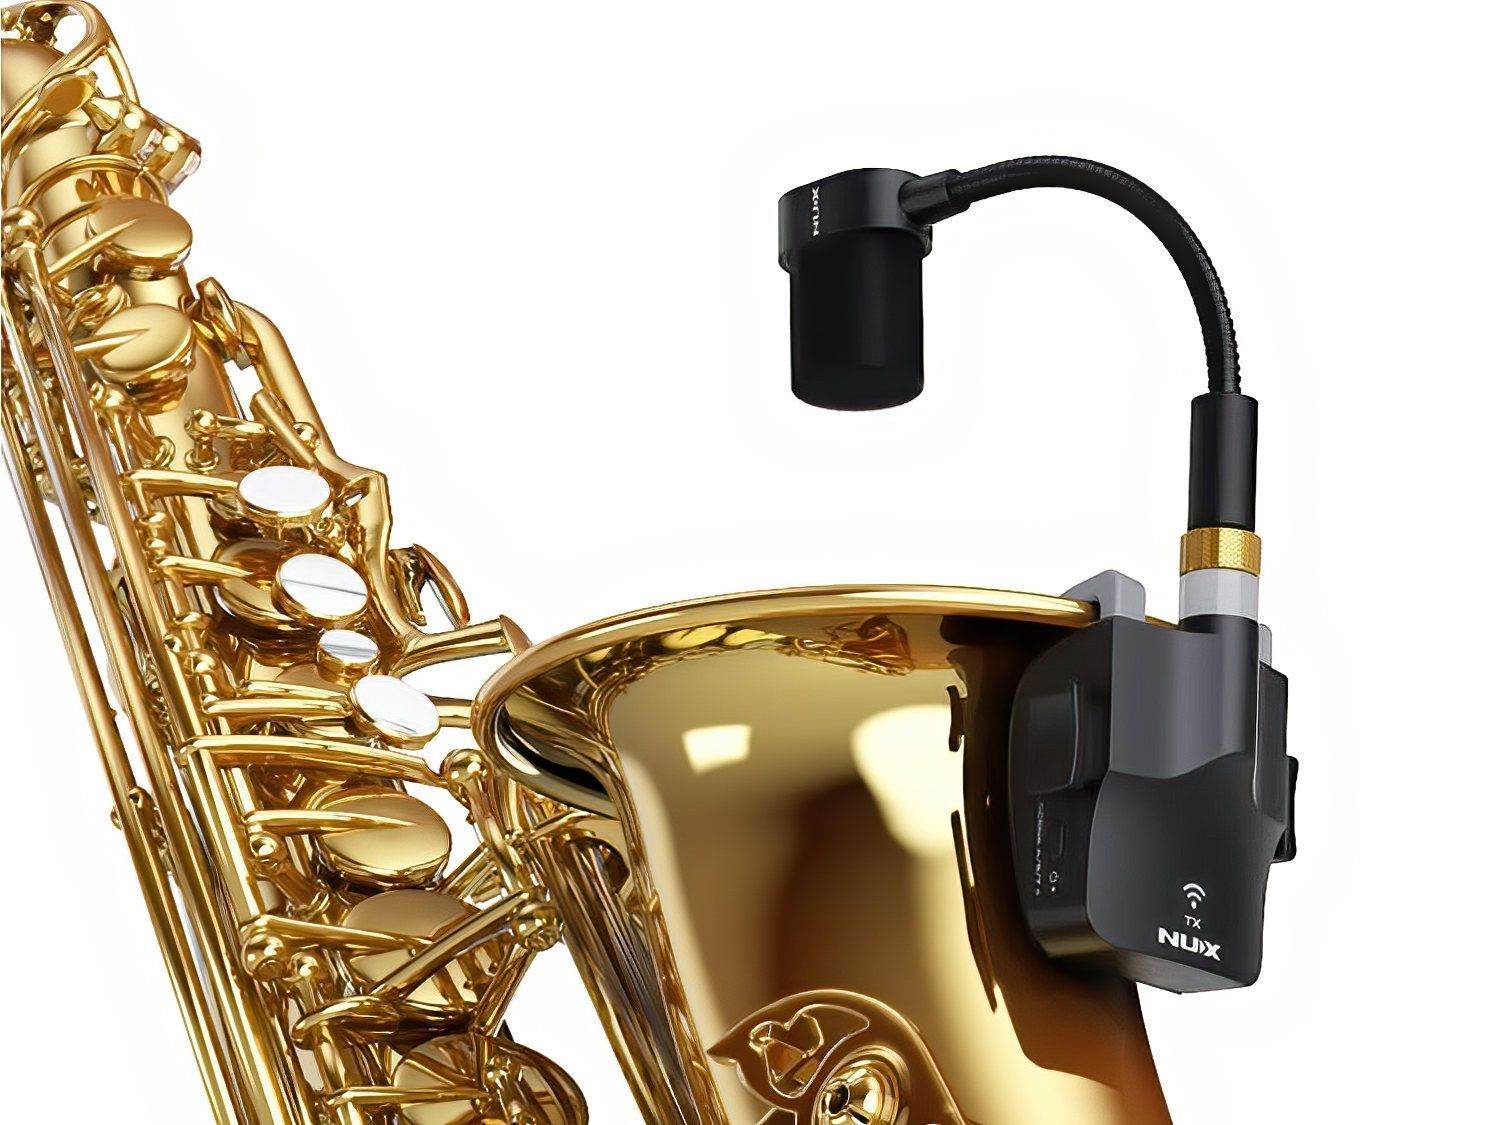 NUX B-6 Blasinstrumenten-Wireless-System 2,4 GHz, Anklippmikrofon für Saxophon